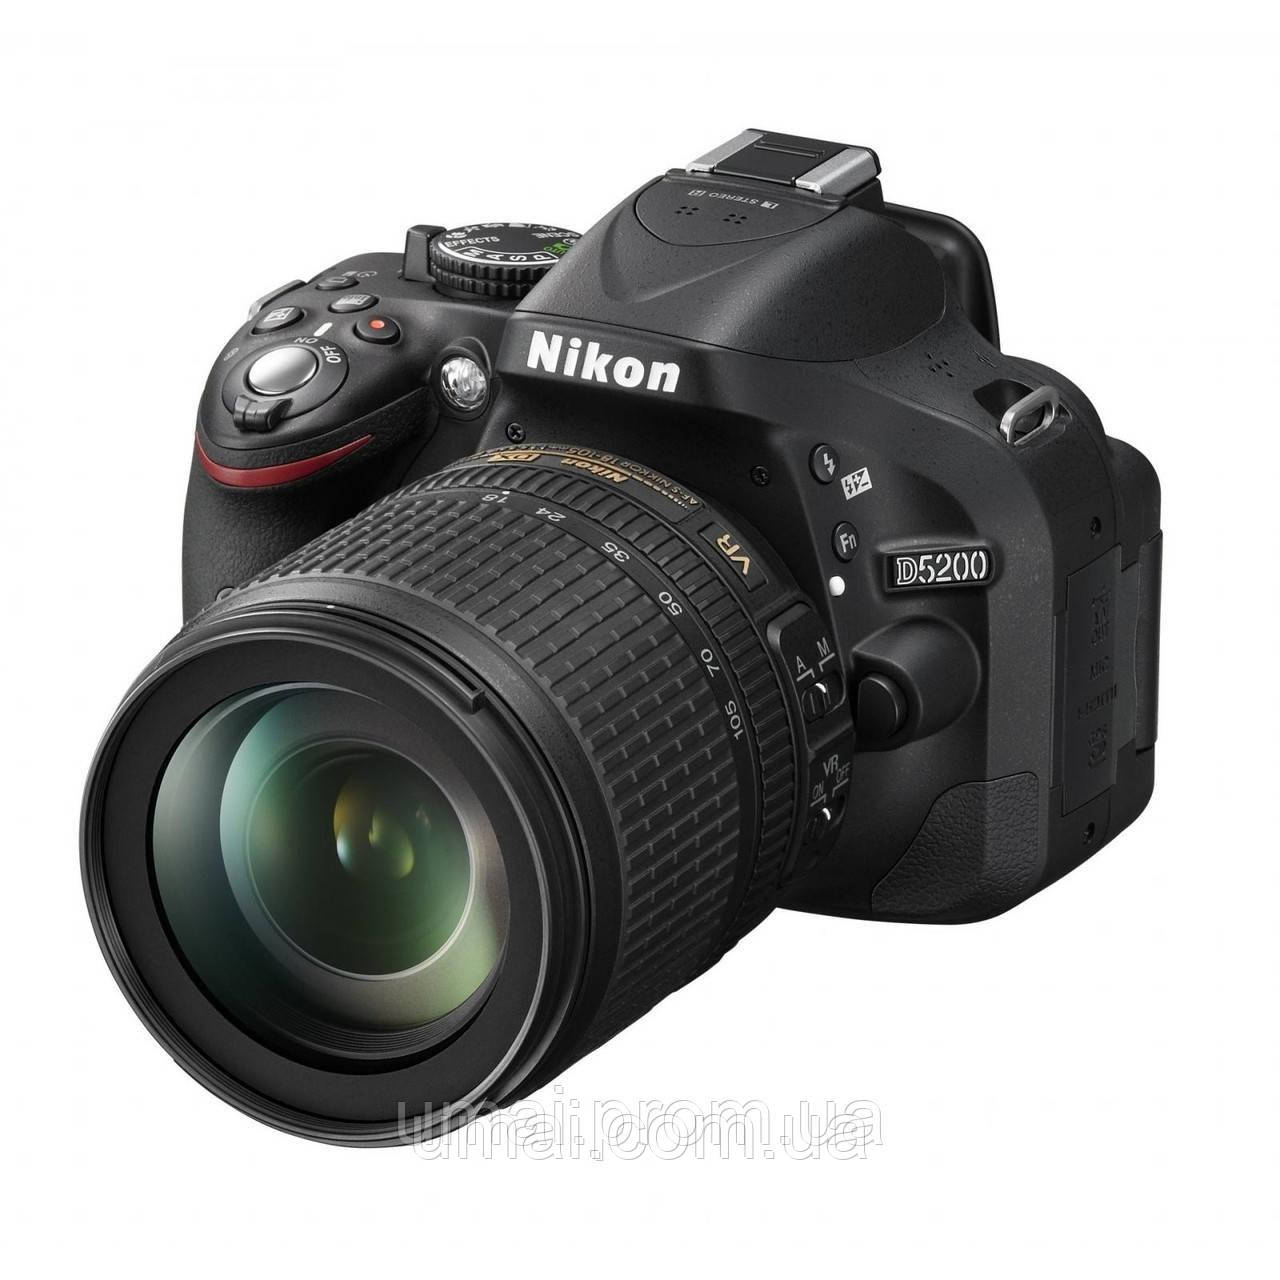 Фотоапарат Nikon D5200 AF-S 18-105 mm 16.2MP f/3.5-5.6G ED VR Full HD Гарантія 36 місяців + 128GB SD Card